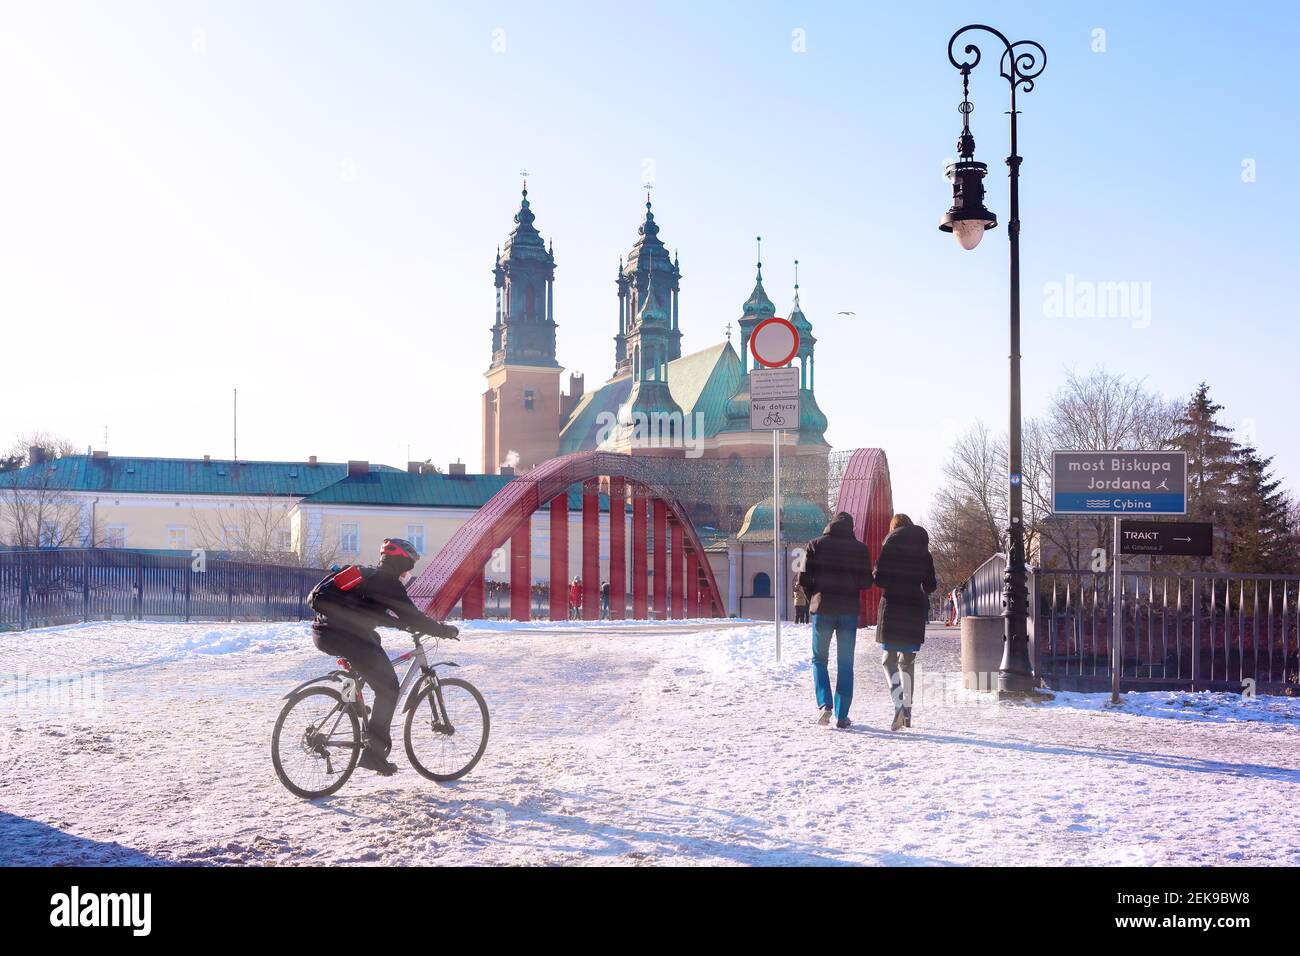 Cattedrale di Poznan nella giornata di sole invernale, Poznan, Polonia. Iscrizione sul tabellone segnapunti - il ponte del vescovo Jordan e il fiume Cybina Foto Stock